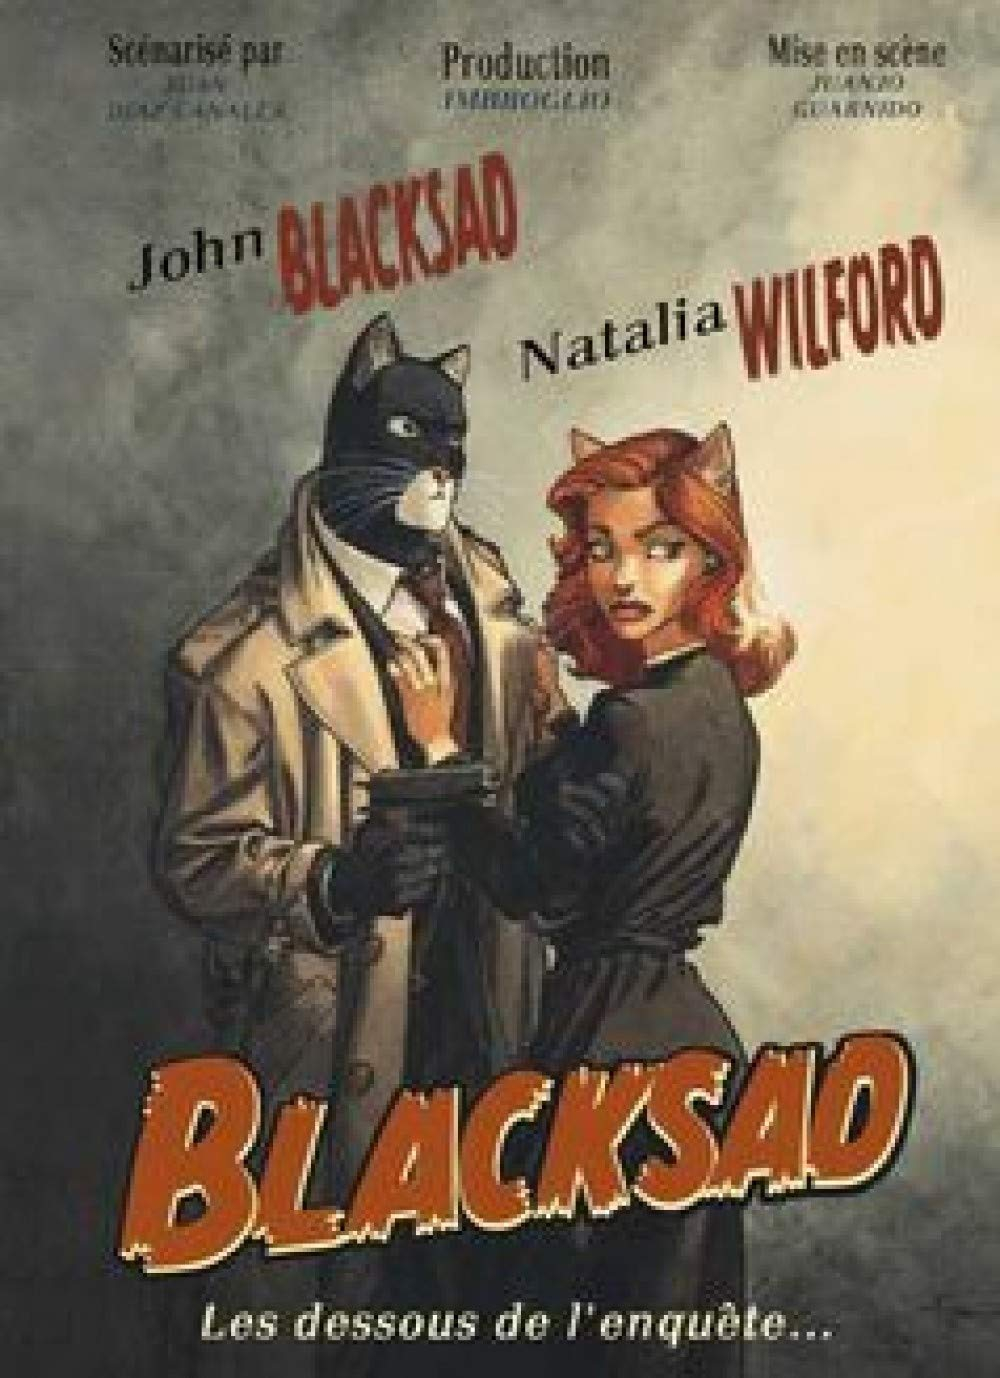 Blacksad : les dessous de l'enquête...